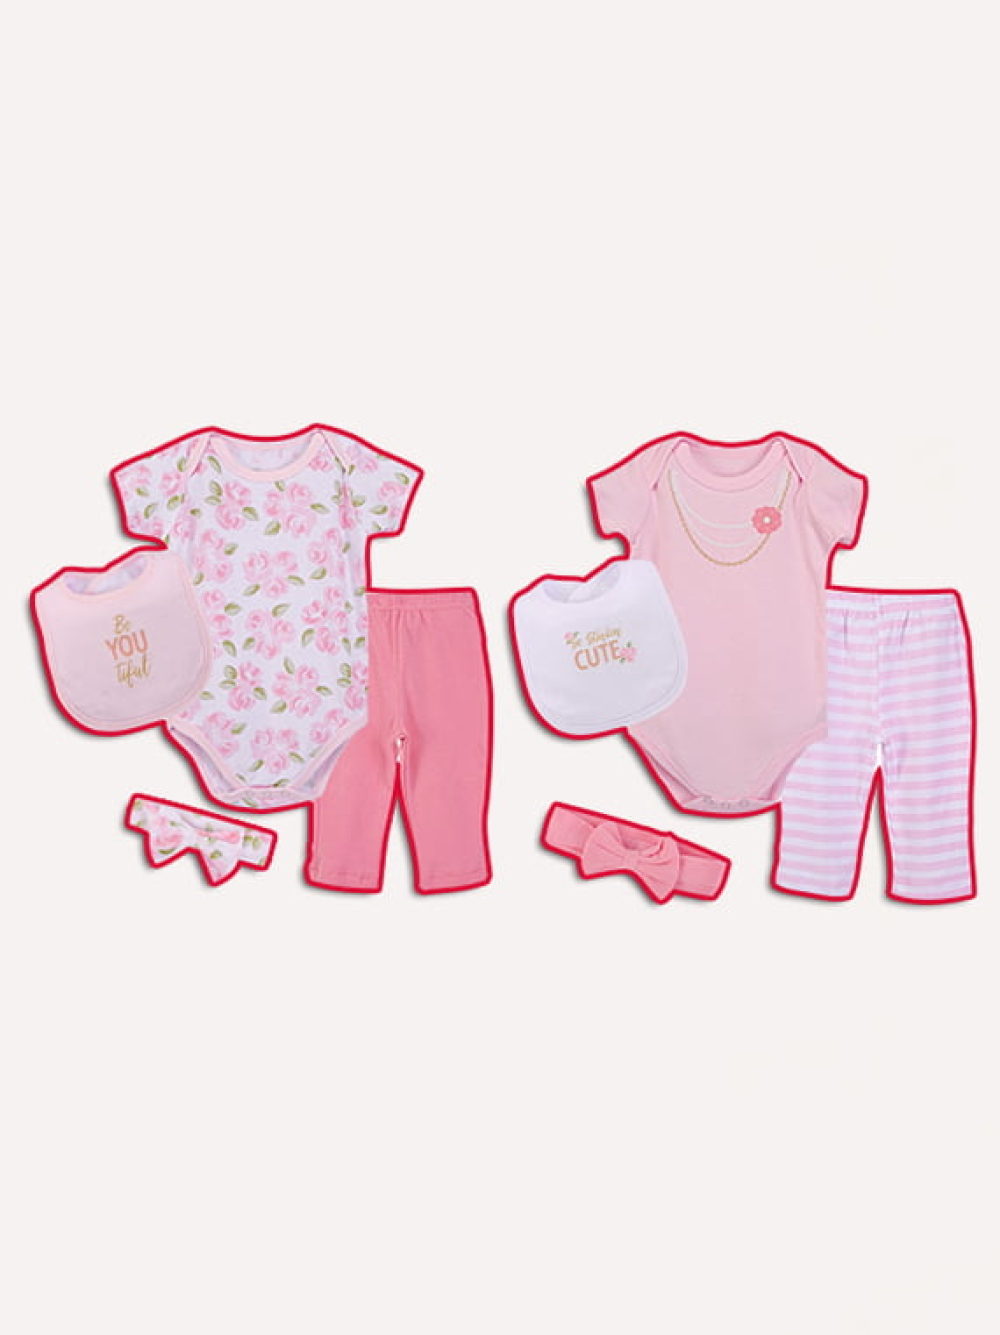 Baby Girl Clothing Gift